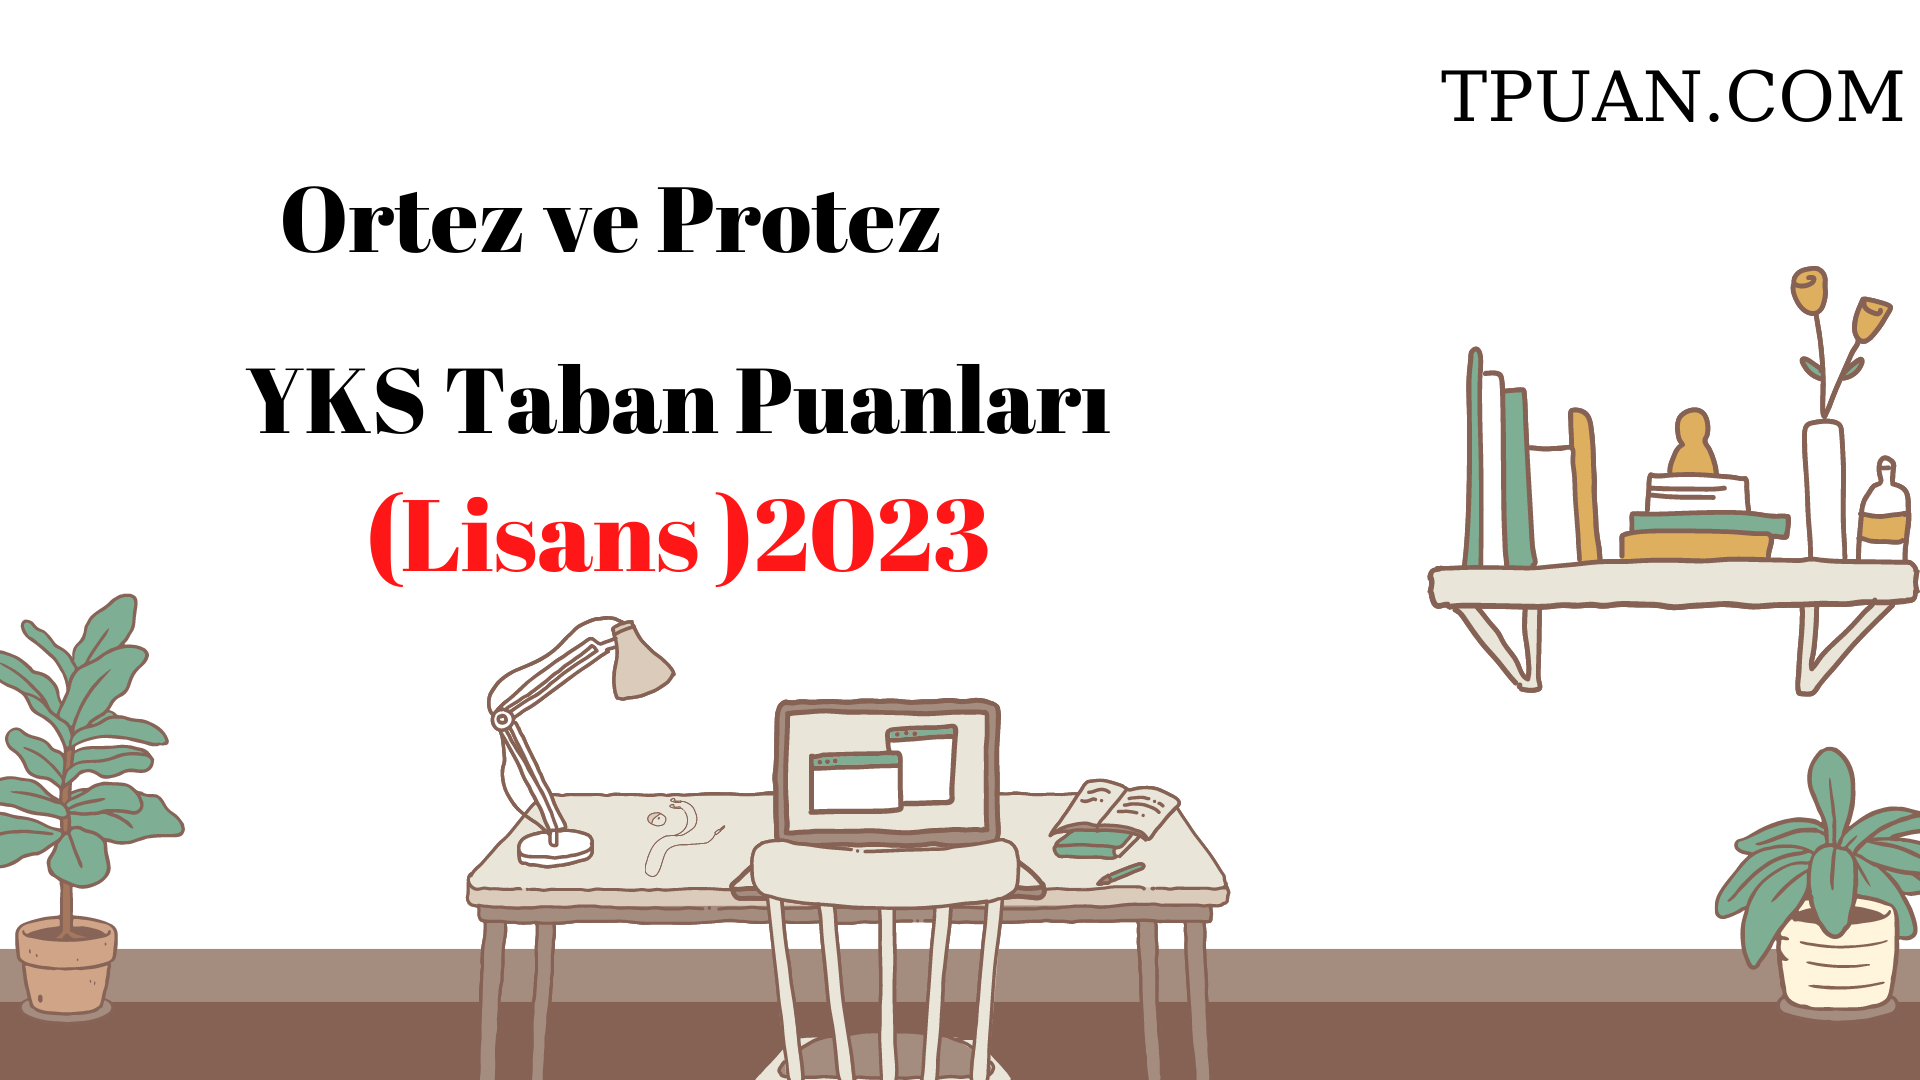  Ortez ve Protez Bölümü YKS Taban Puanları (4 Yıllık) 2023